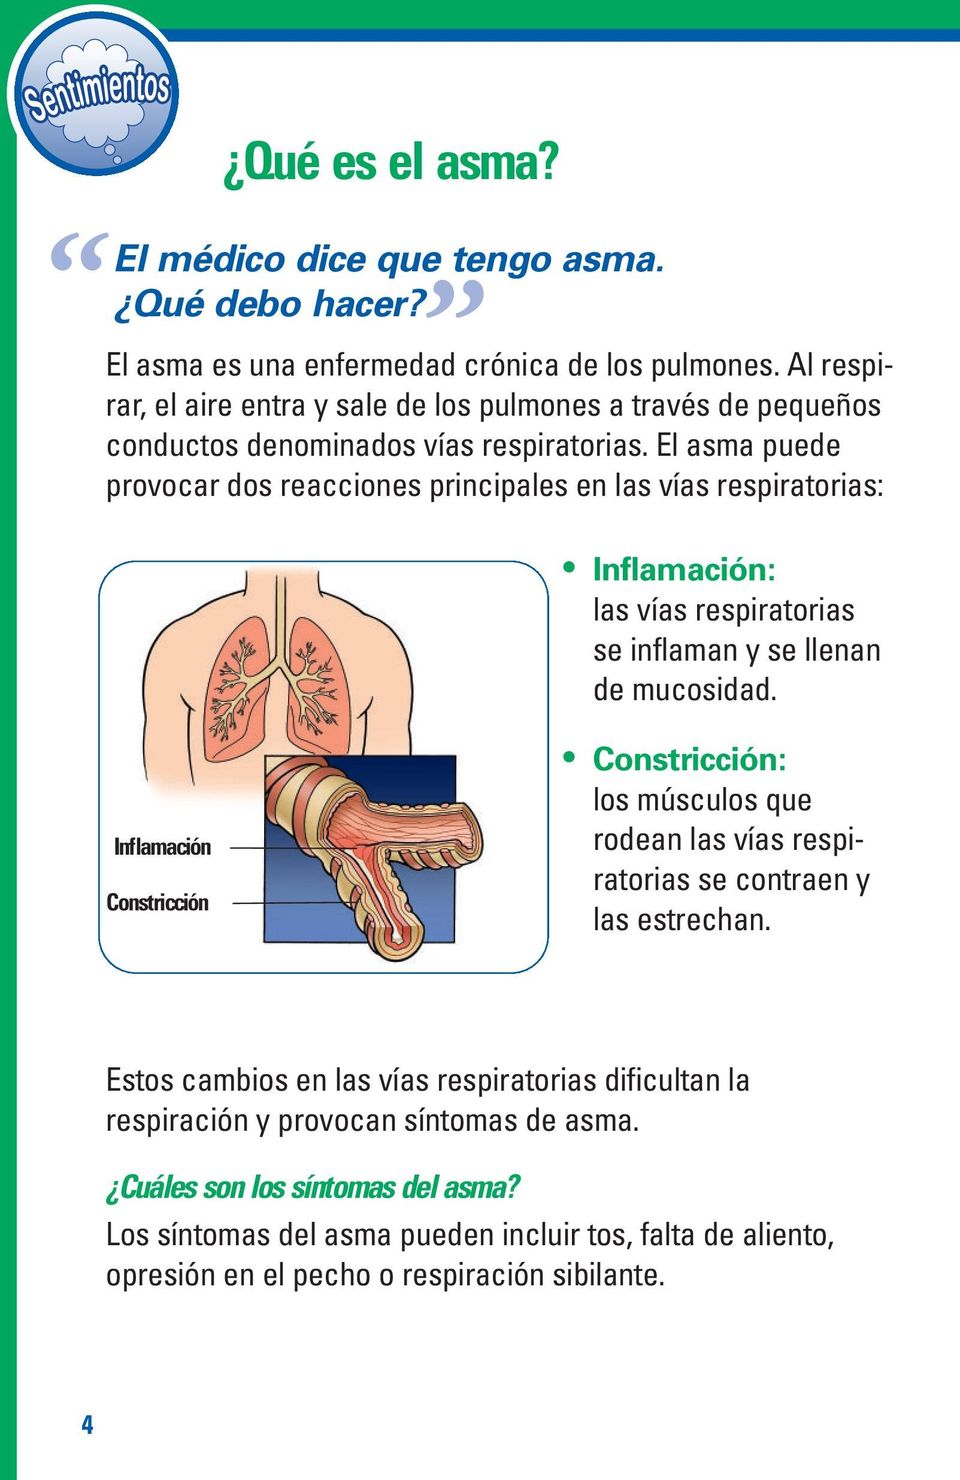 El asma puede provocar dos reacciones principales en las vías respiratorias: Inflamación: las vías respiratorias se inflaman y se llenan de mucosidad.